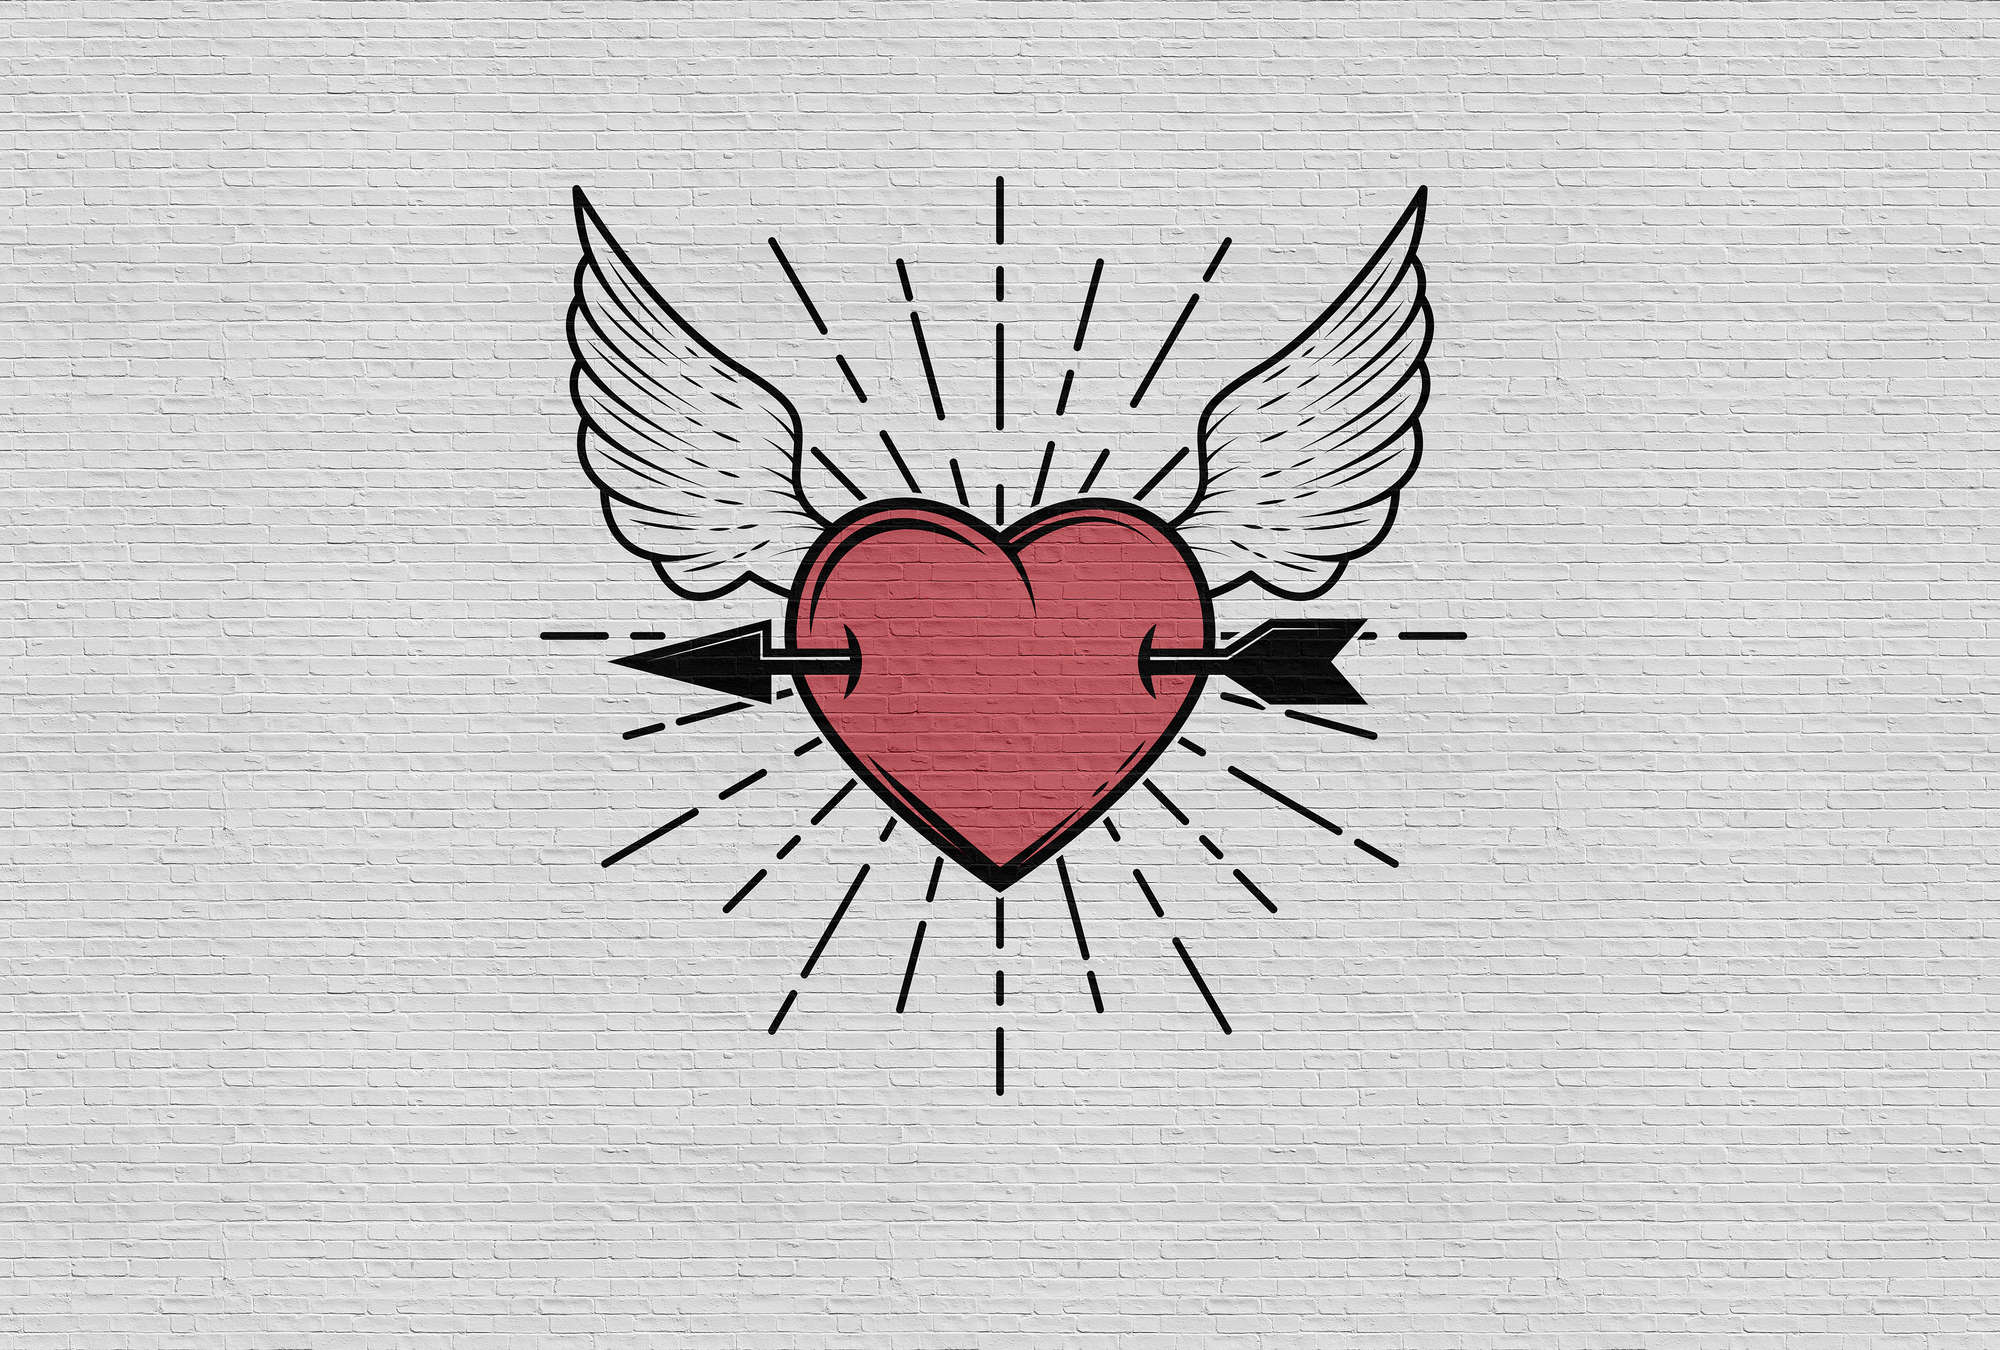             Tattoo you 1 - Papel pintado con foto estilo Rockabilly, motivo corazón - Gris, Rojo | Polar liso de primera calidad
        